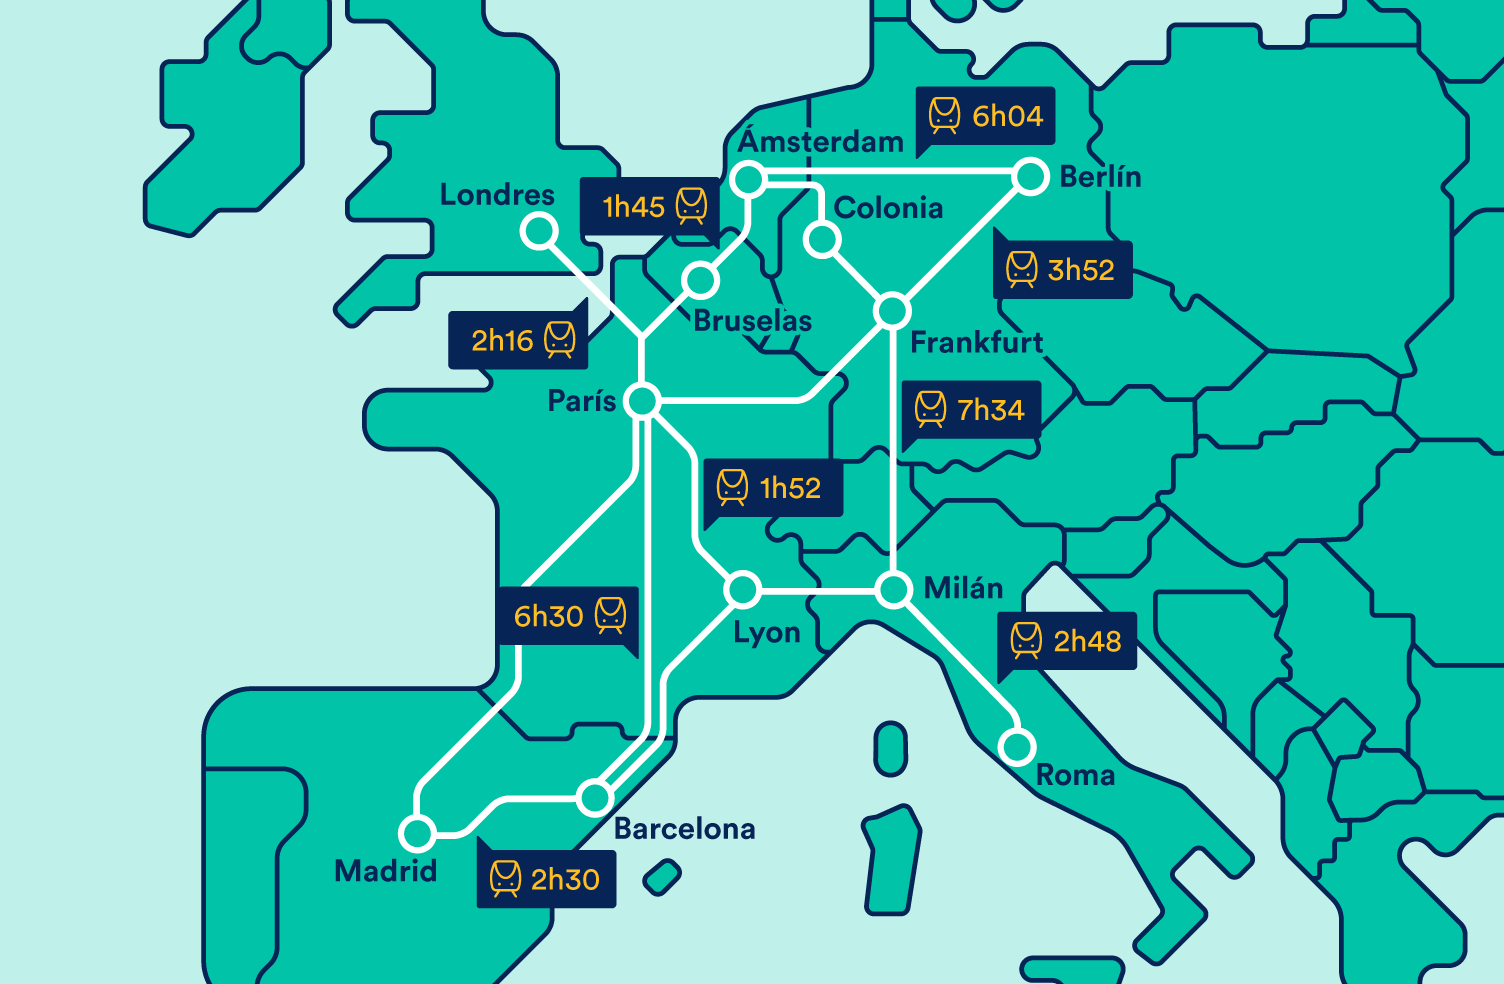 Horarios de trenes en Europa